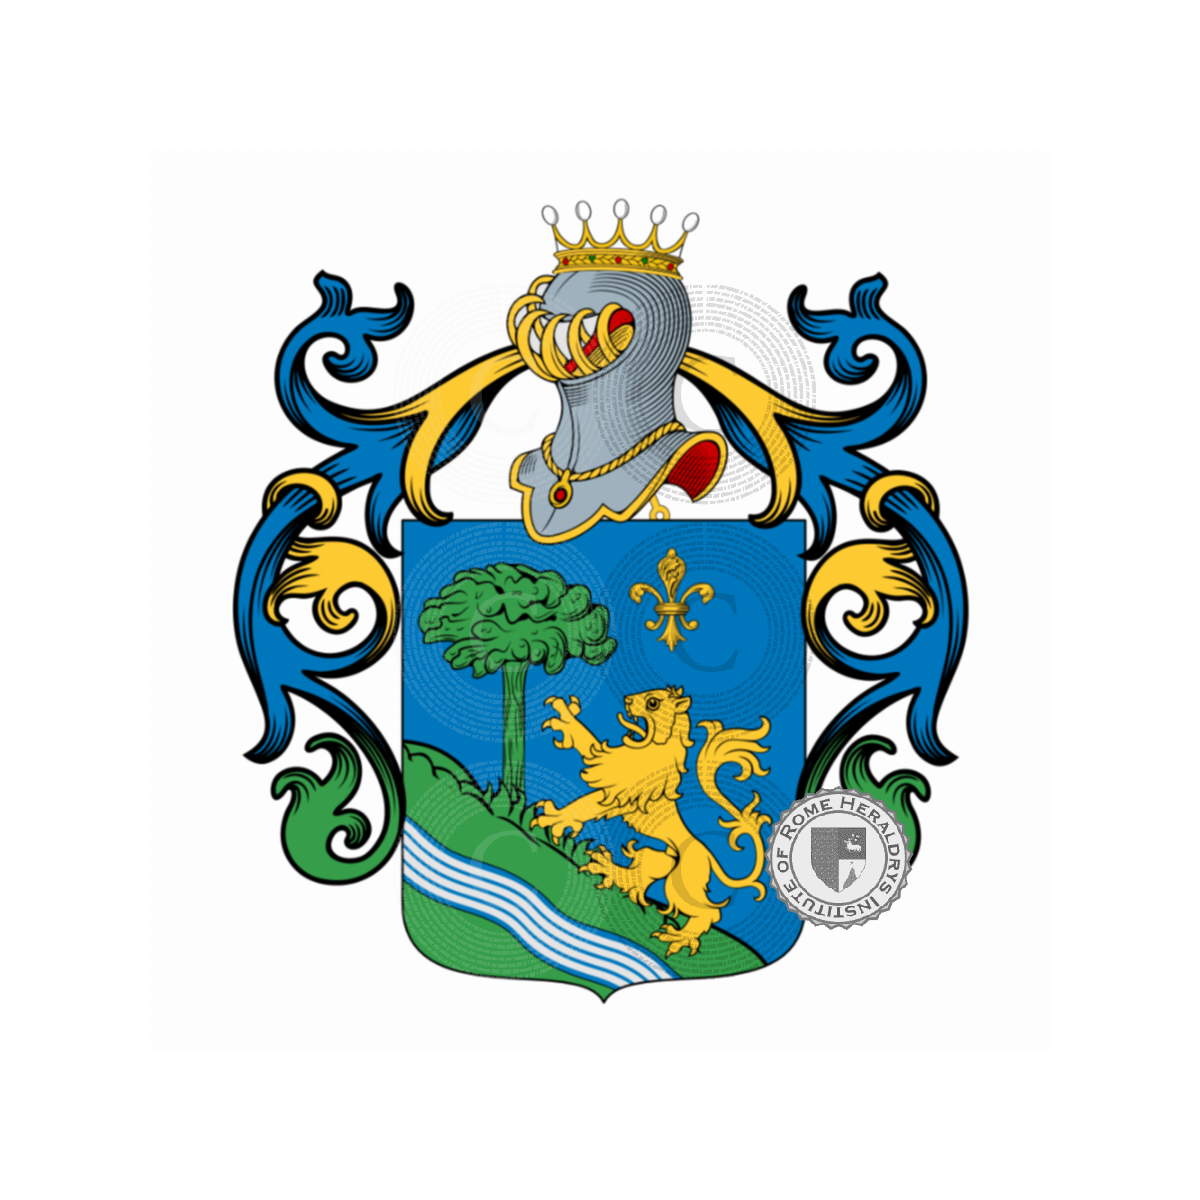 Wappen der FamilieSuzella, Souscelle,Suzella